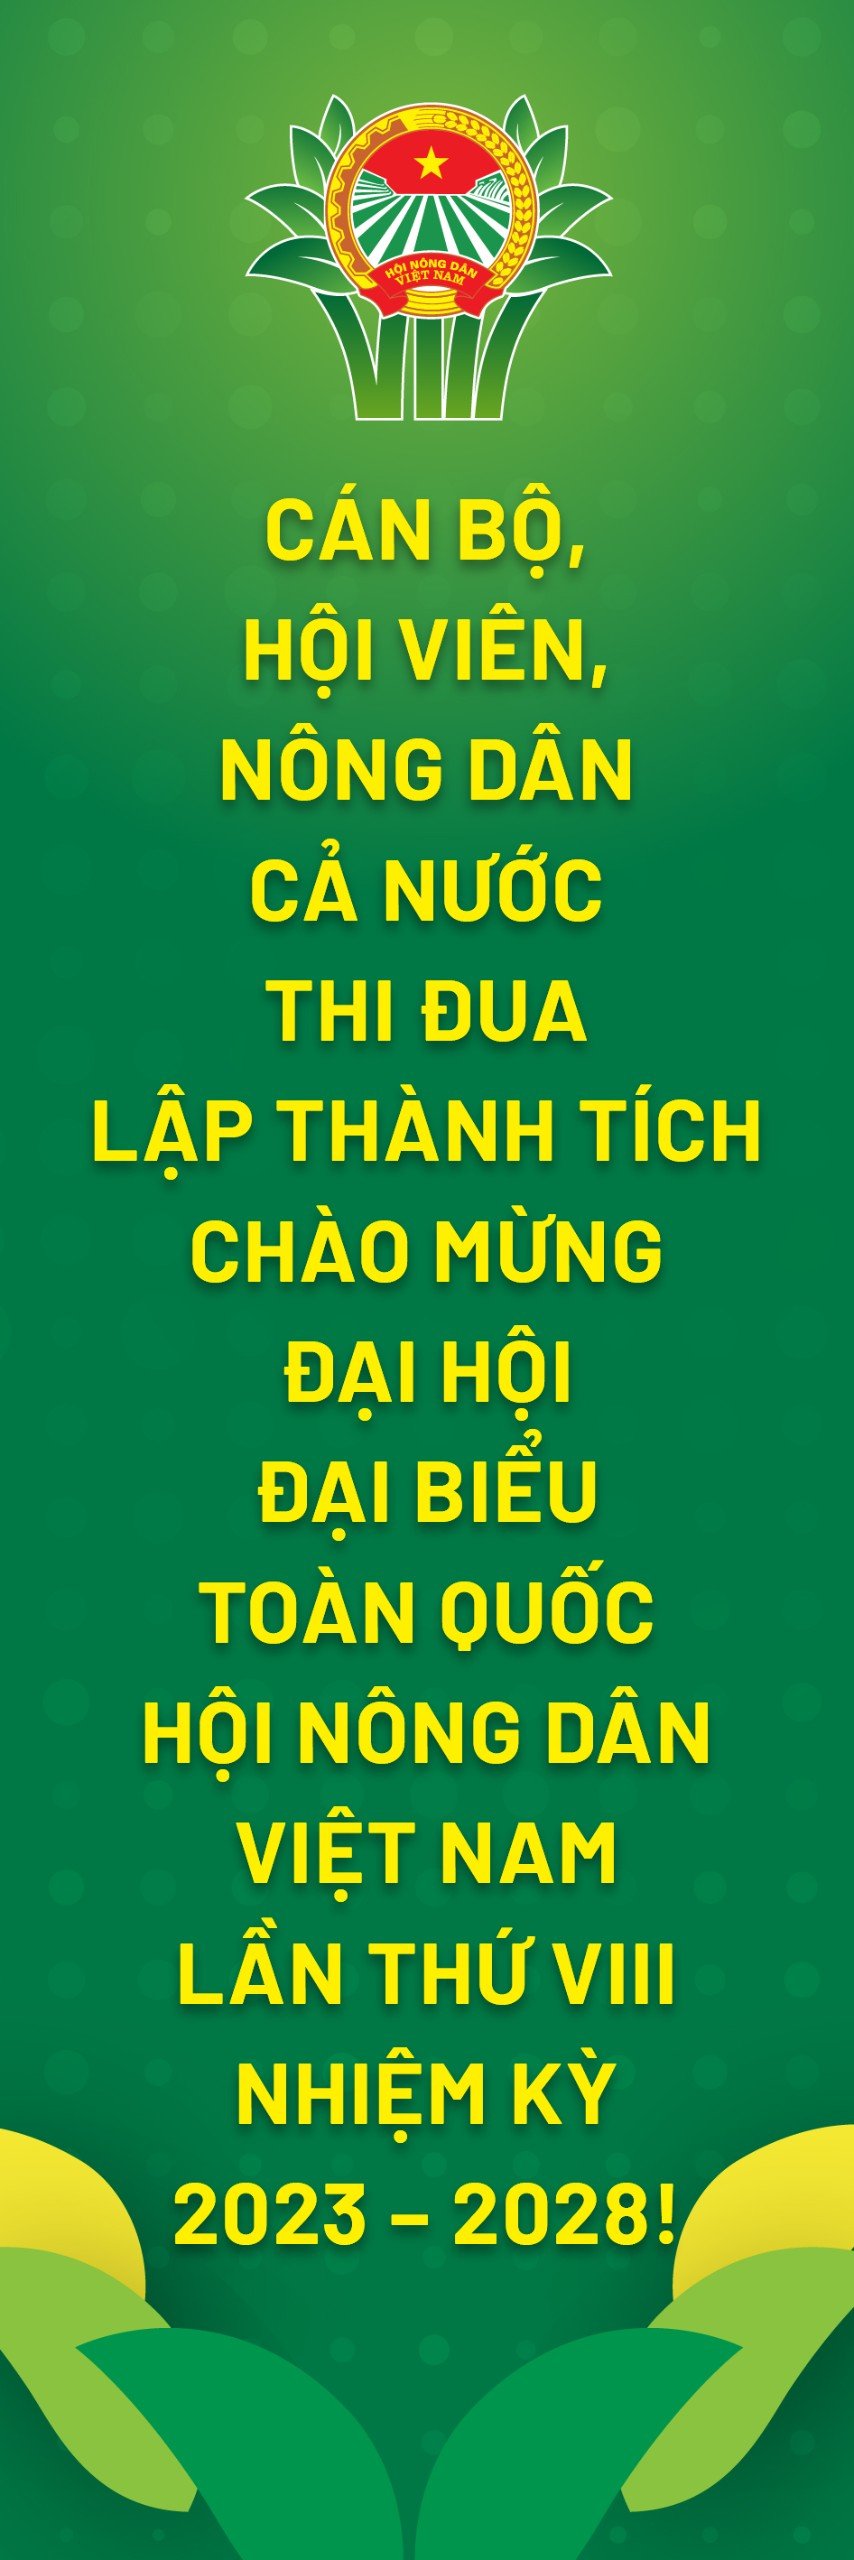 Công bố biểu trưng chính thức Đại hội đại biểu Hội Nông dân Việt Nam  lần thứ VIII, nhiệm kỳ 2023 - 2028 - Ảnh 5.